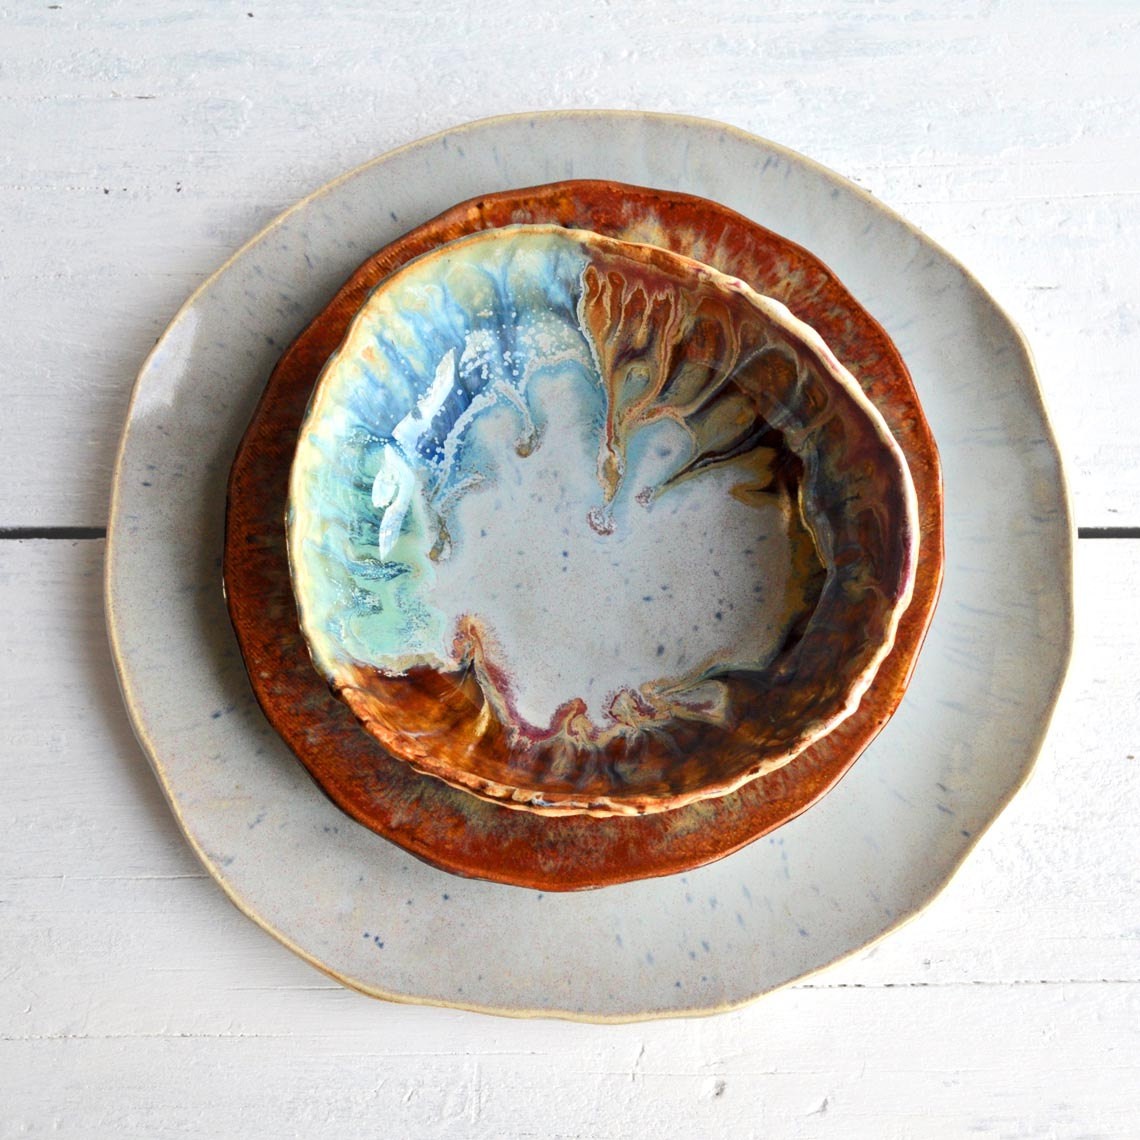 Handmade ceramic plates and bowls